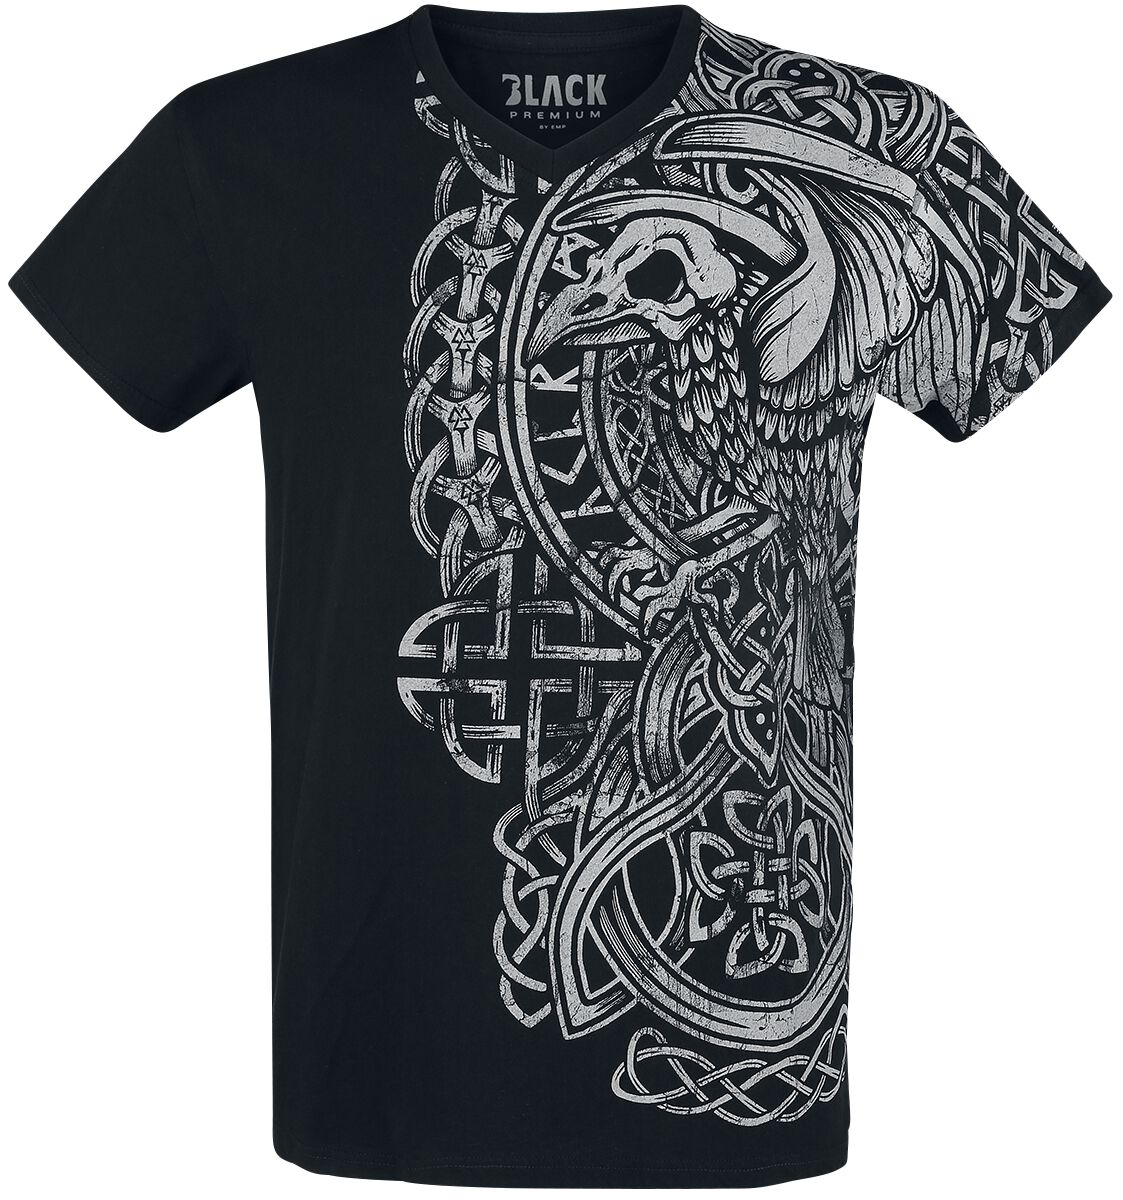 Black Premium by EMP schwarzes T-Shirt mit Print und V-Ausschnitt T-Shirt schwarz in M